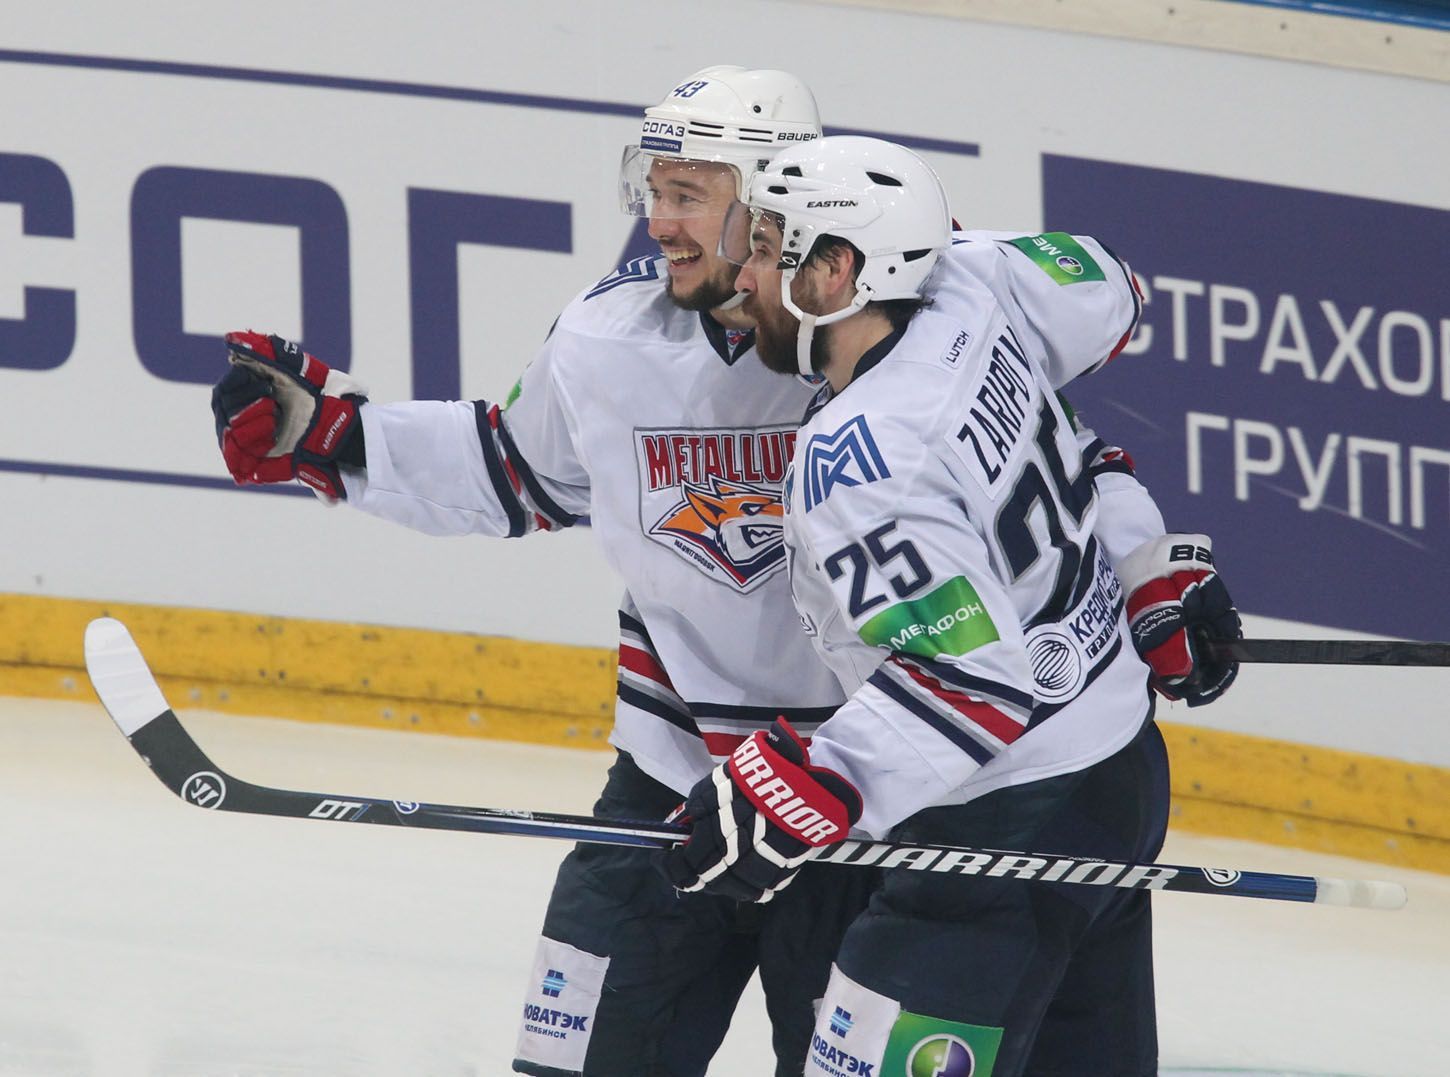 Lev Praha vs. Magnitogorsk, čtvrté finále KHL v O2 aréně (Zaripov, Kovář)